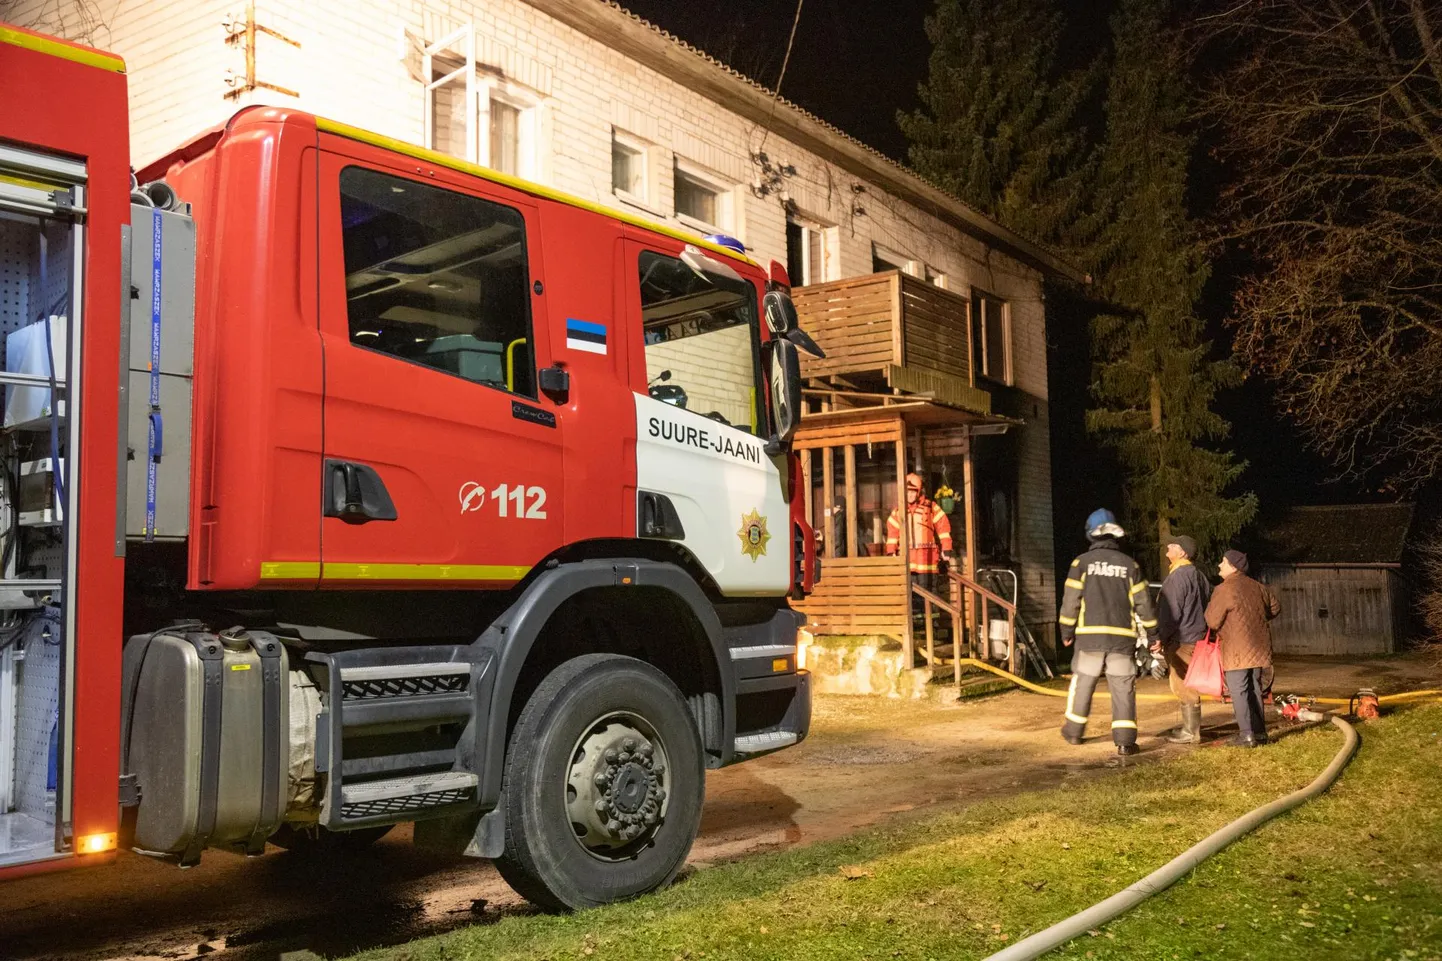 Eelmise aasta raskeim tuleõnnetus juhtus 19. novembril Kõidamal, kus hukkus kolm inimest.